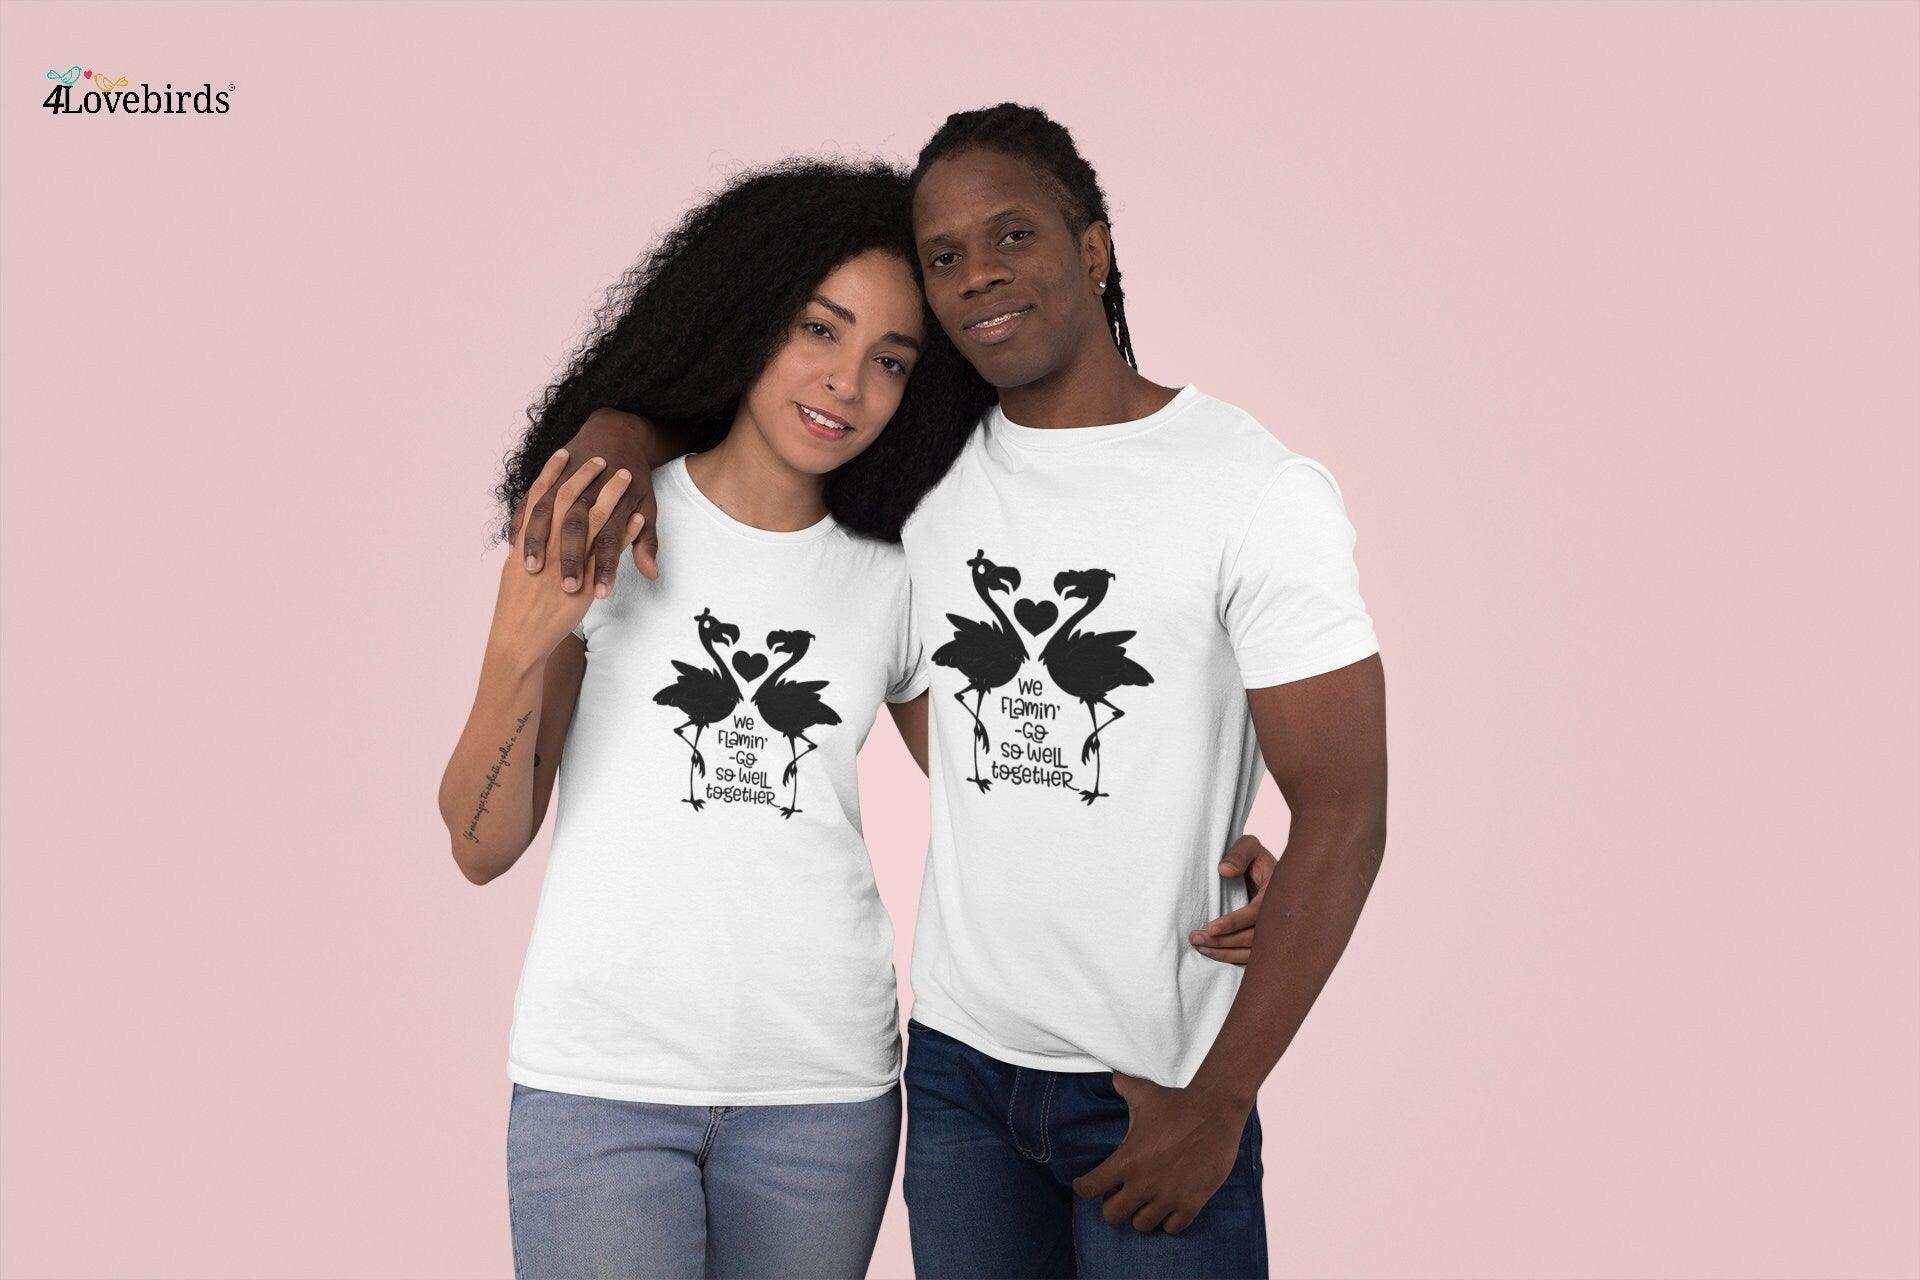 Fremmedgørelse rent faktisk læser We Flamingo so well together Hoodie, Funny T-shirt, Gift for Couples, –  4Lovebirds